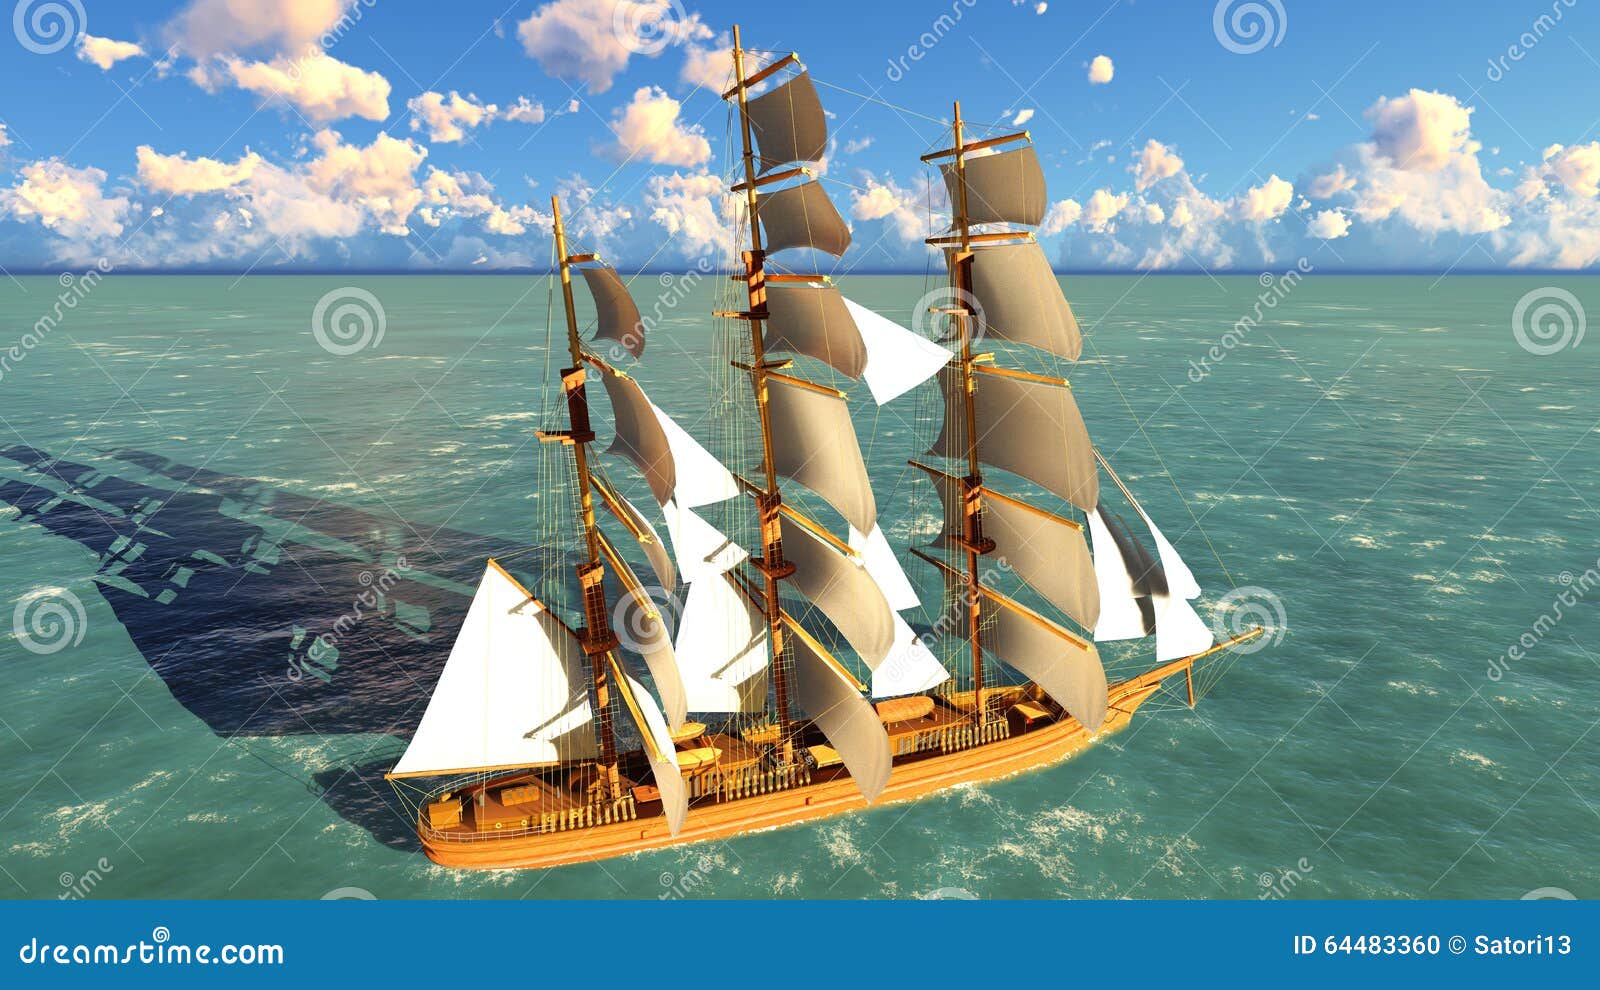 pirate brigantine at sea